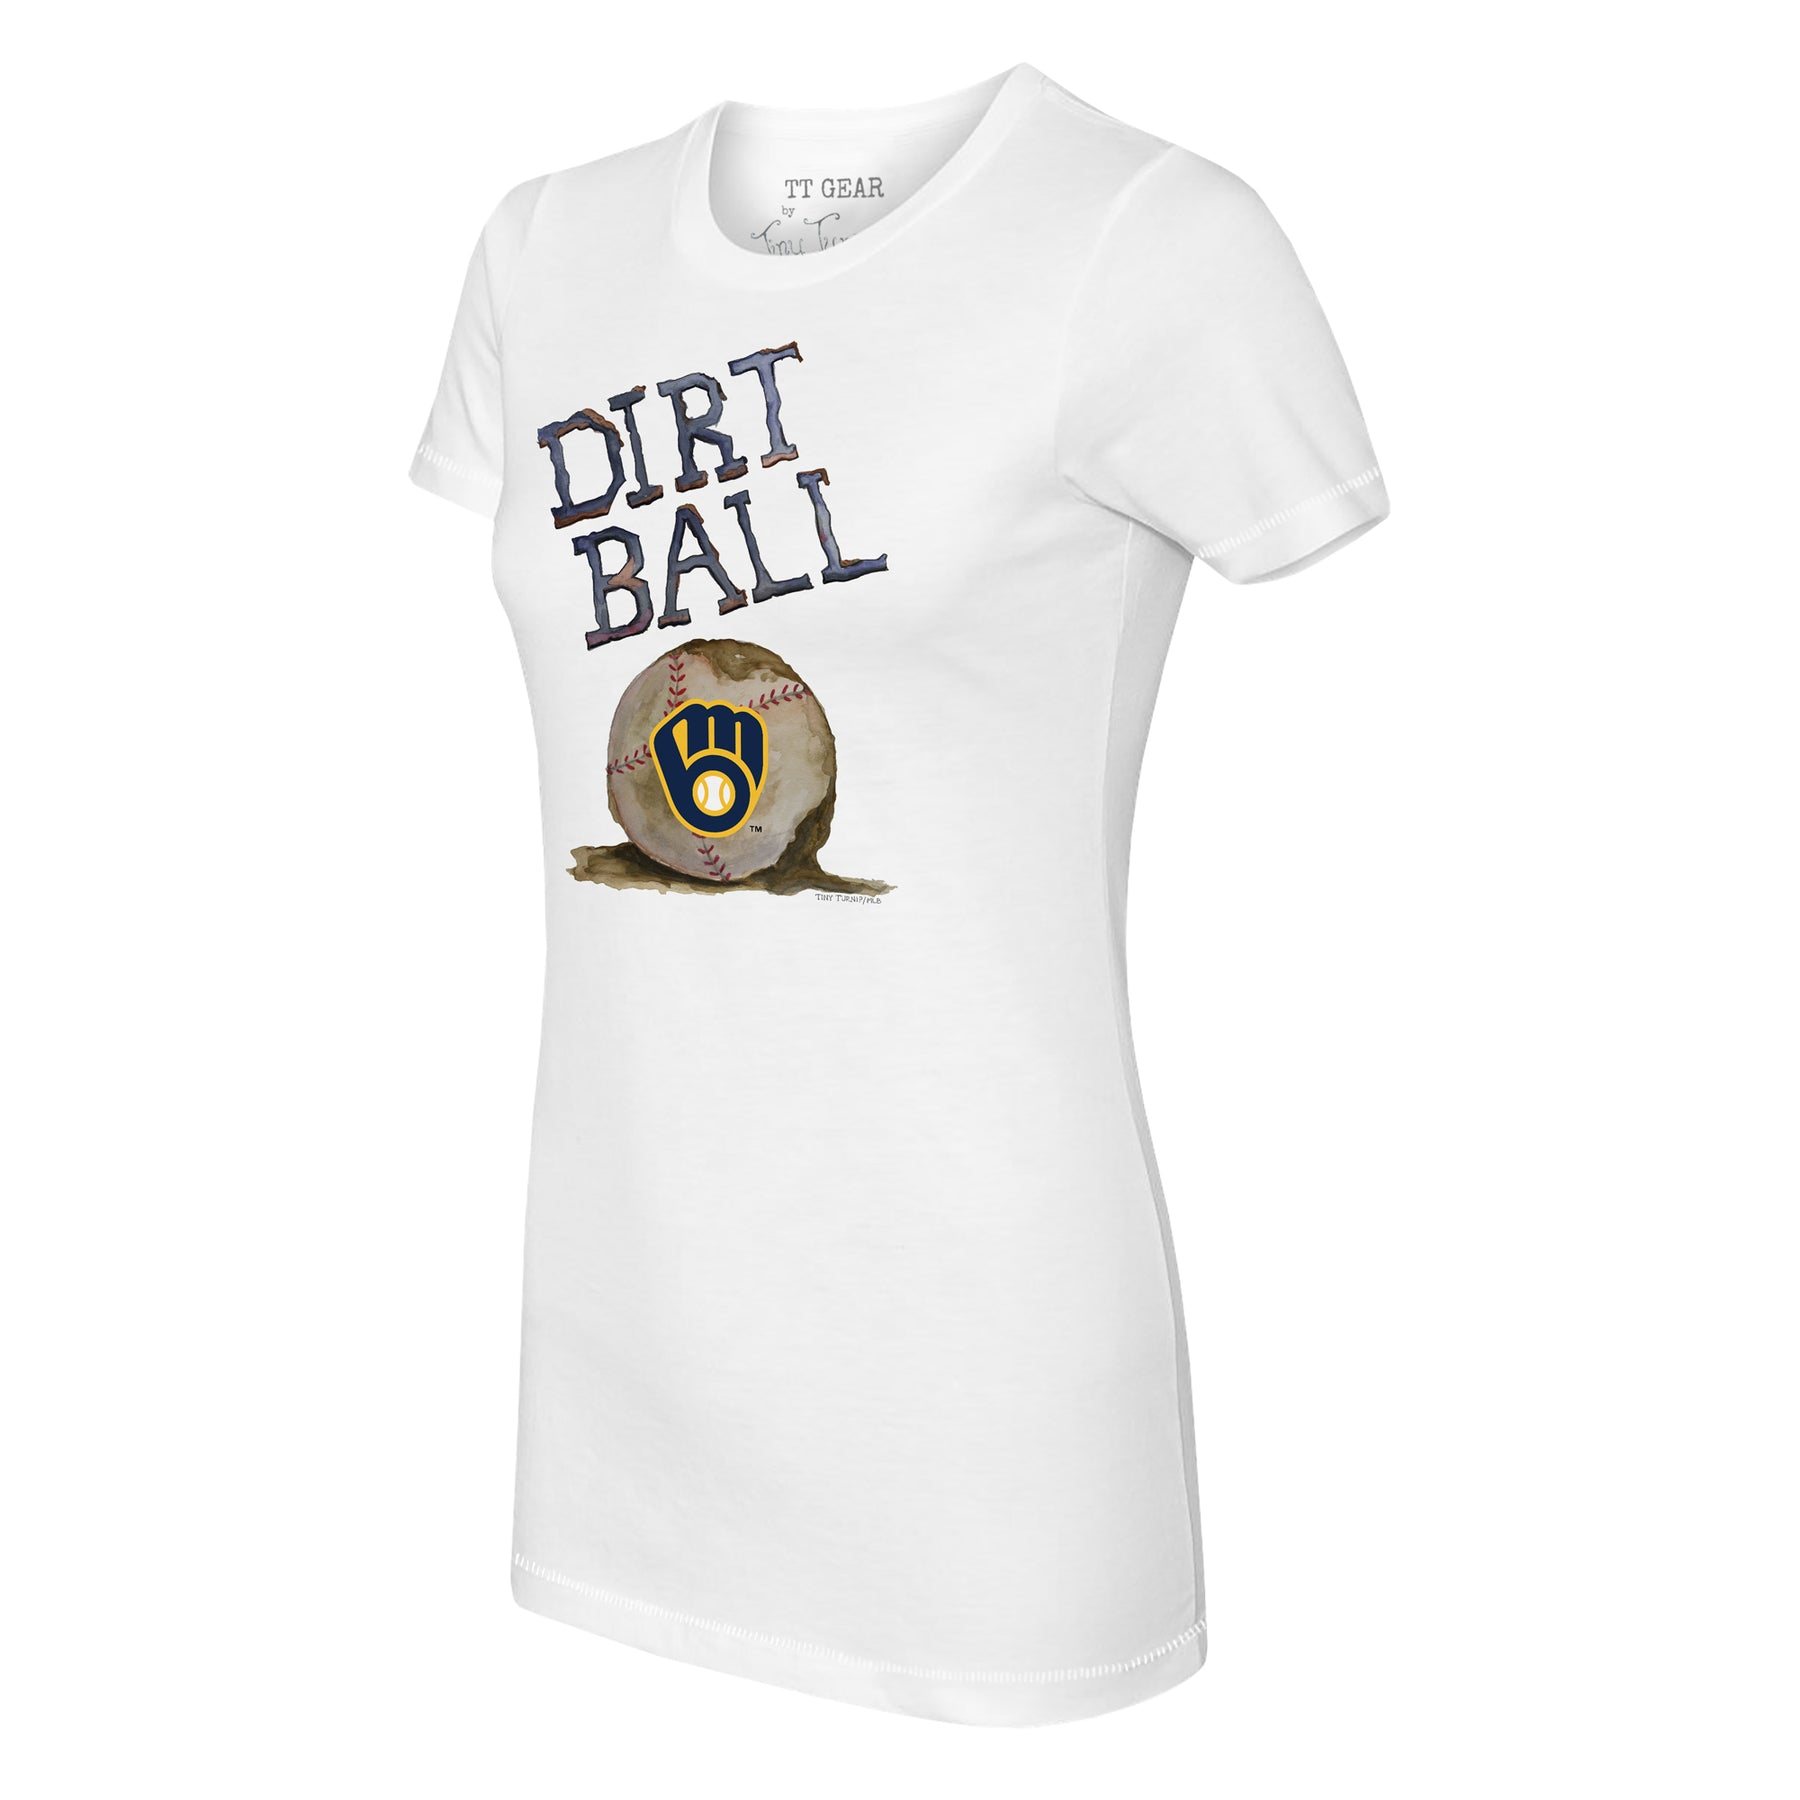 Tiny Turnip Milwaukee Brewers Dirt Ball Tee Shirt Women's XS / White